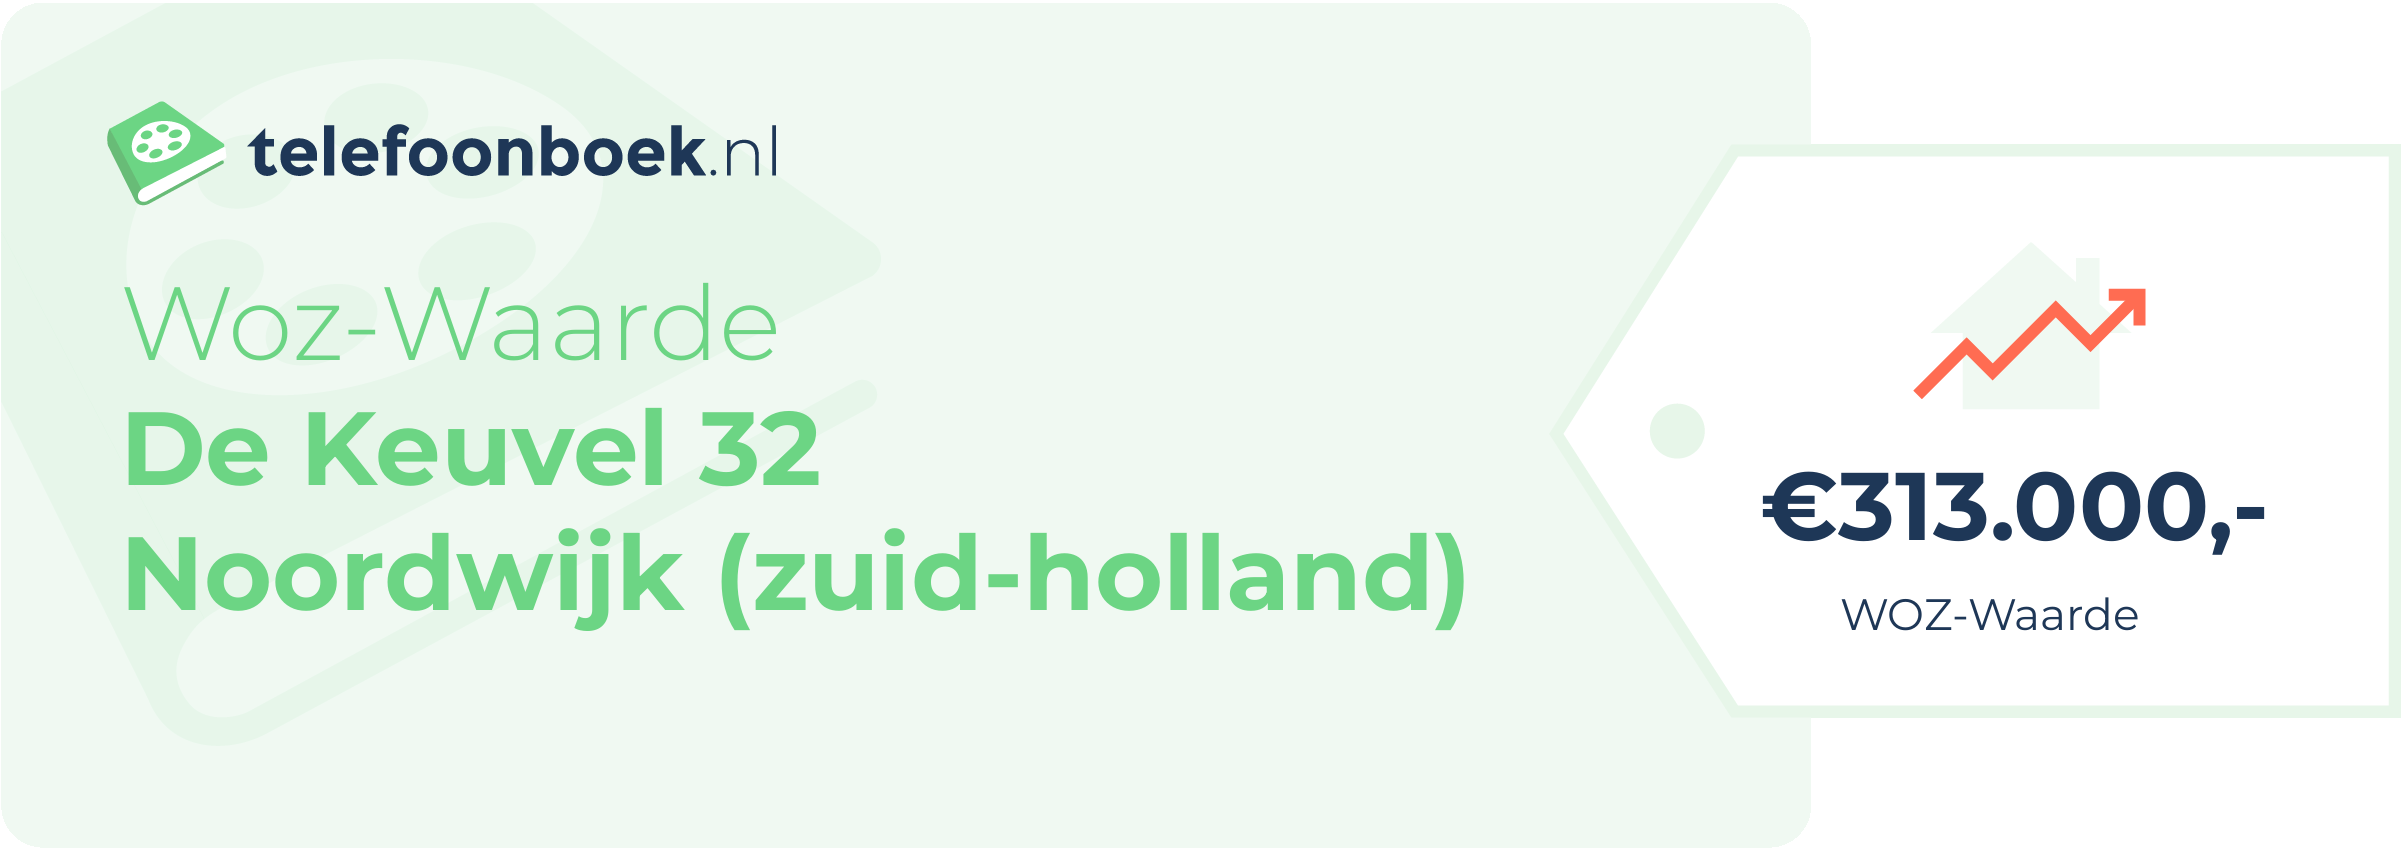 WOZ-waarde De Keuvel 32 Noordwijk (Zuid-Holland)